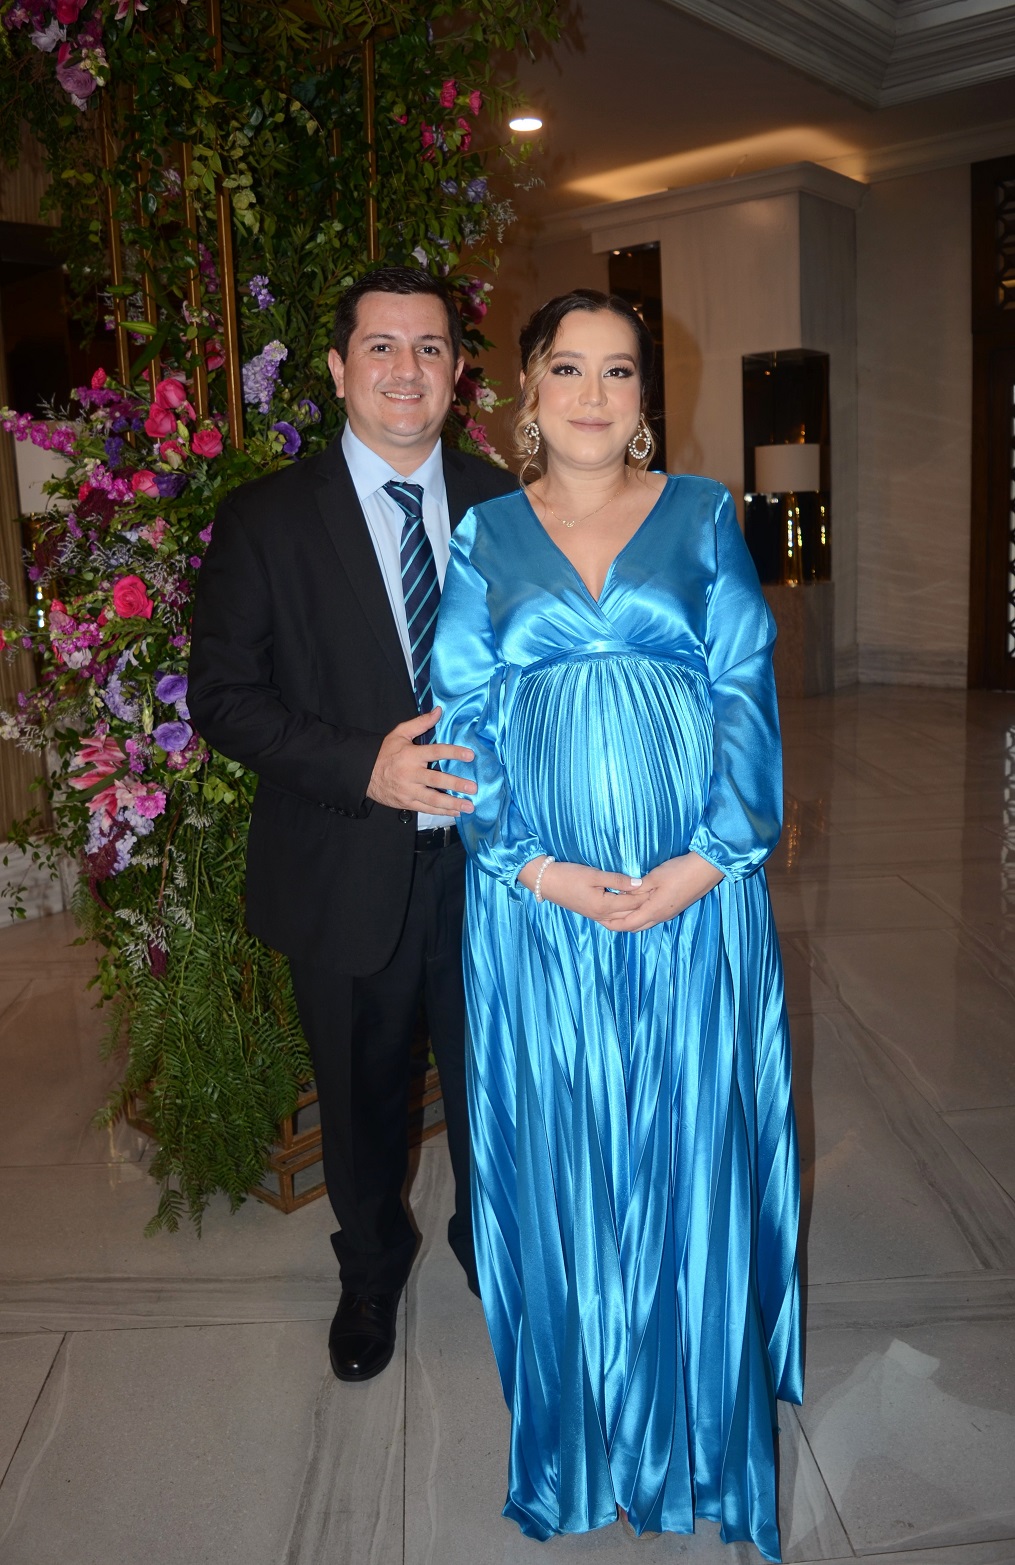 La boda de Gigi Ferez y Renán Núñez… de esencia romántica y elegancia de ensueño